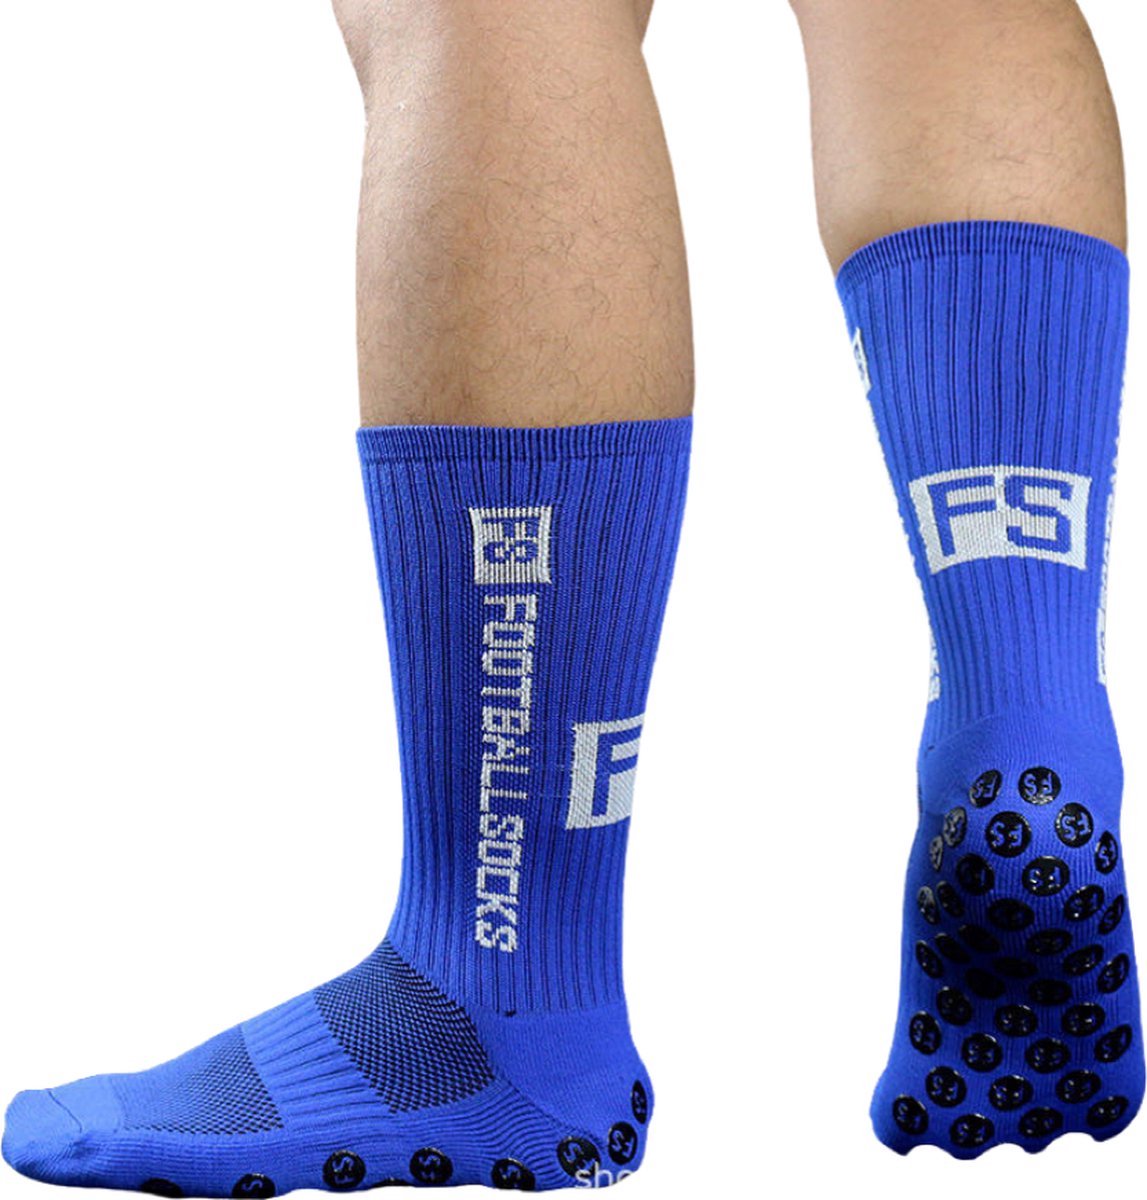 Footballsocks® Gripsokken - Gripsokken Voetbal - Grip Socks - One Size - Anti Slip - Gripsokken Blauw